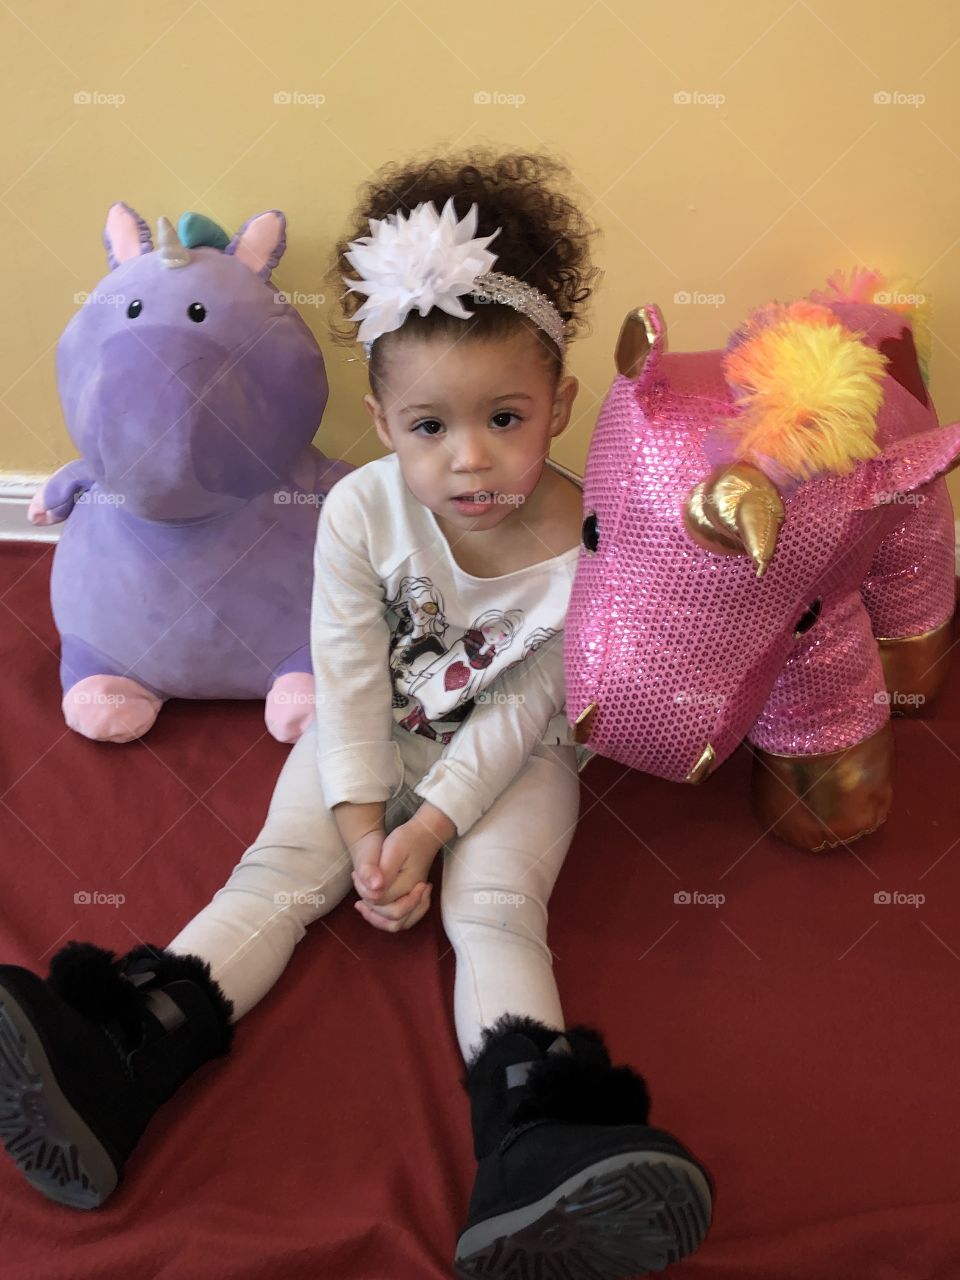 She loves unicorn !